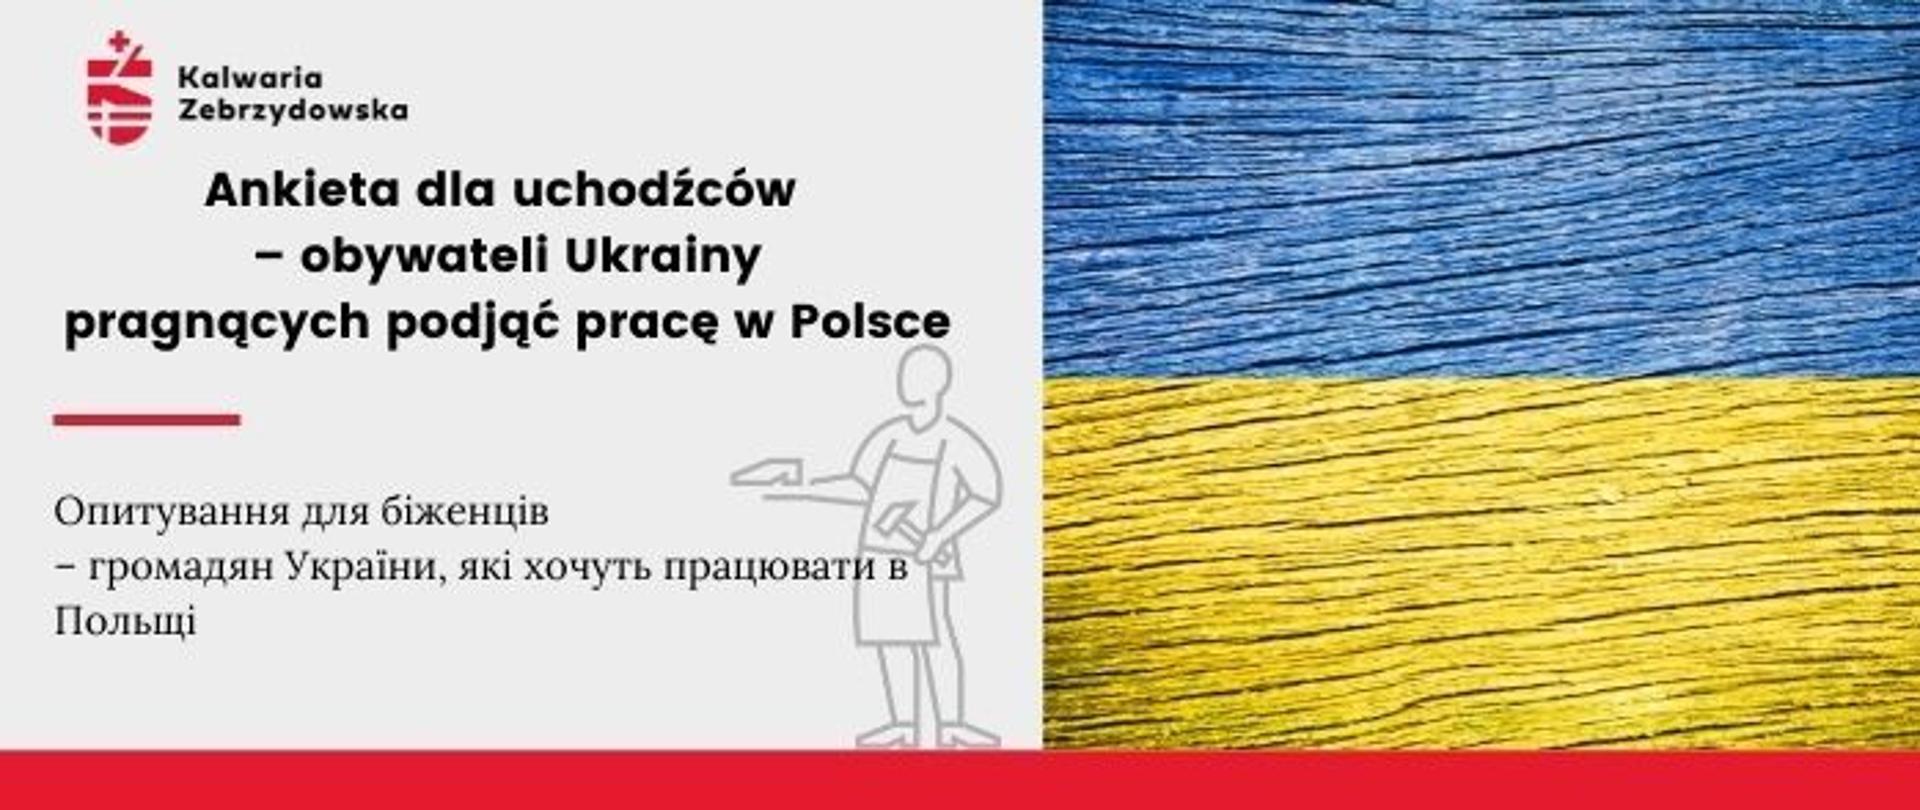 Plansza informacyjna - Ankieta dla uchodźców – obywateli Ukrainy, pragnących podjąć pracę w Polsce. W prawej części planszy flaga Ukrainy na drewnie, po lewej opis. 